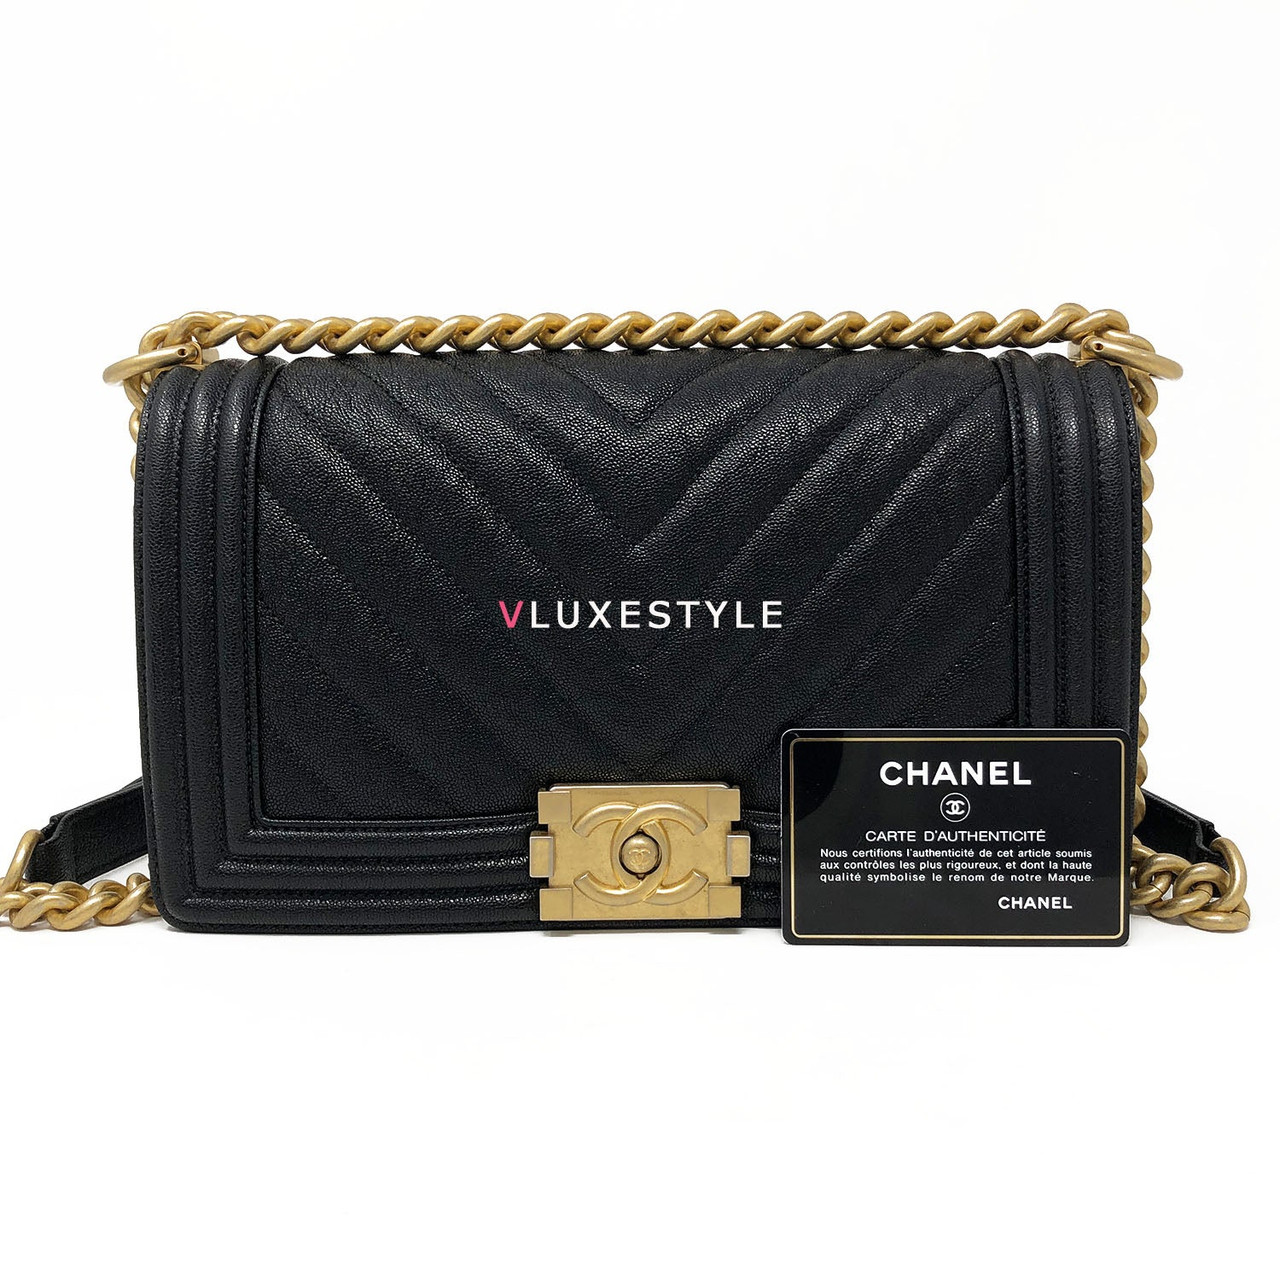 Chanel Boy Chanel Handbag